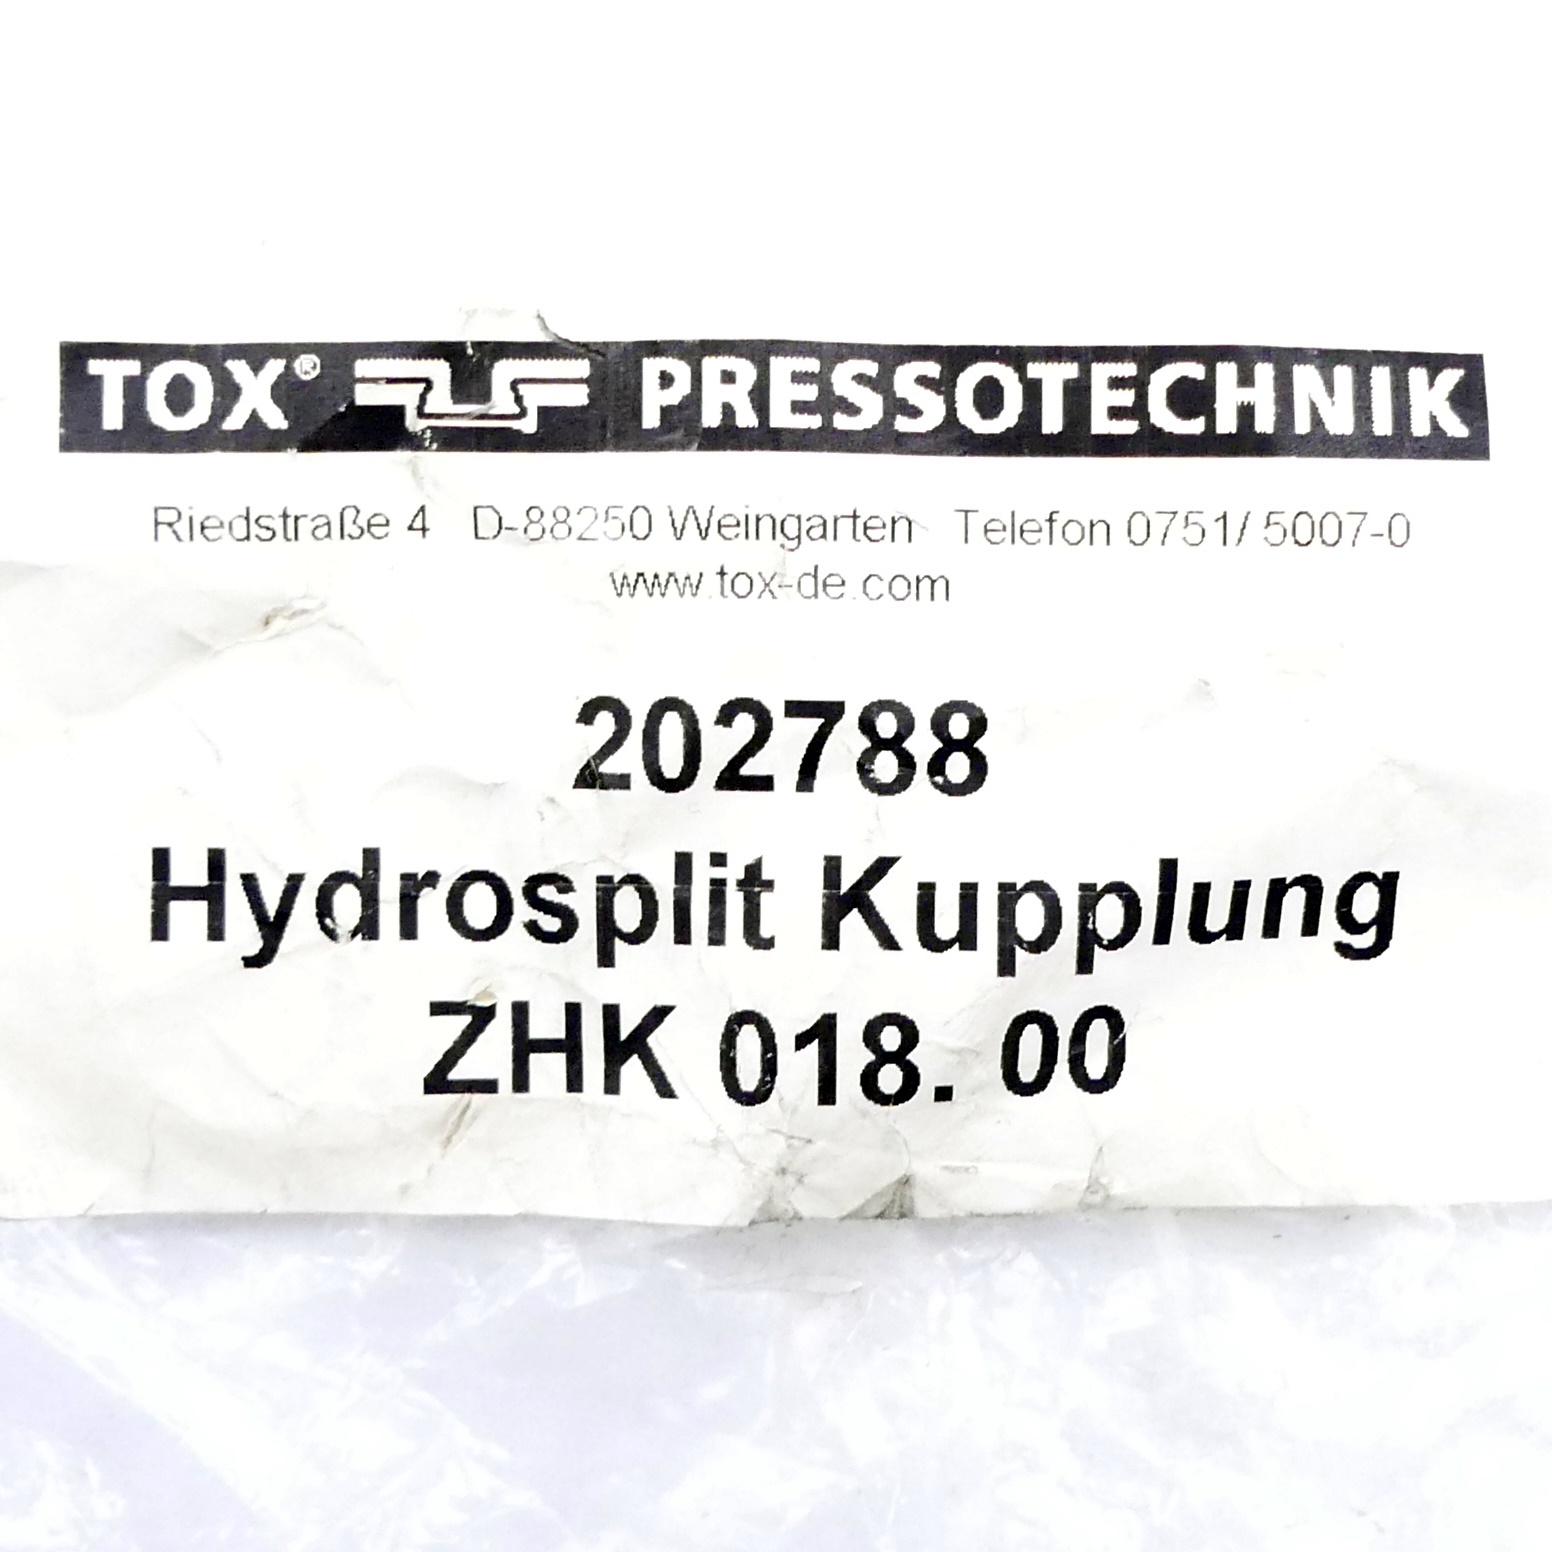 Hydrosplit coupling ZHK 018. 00 